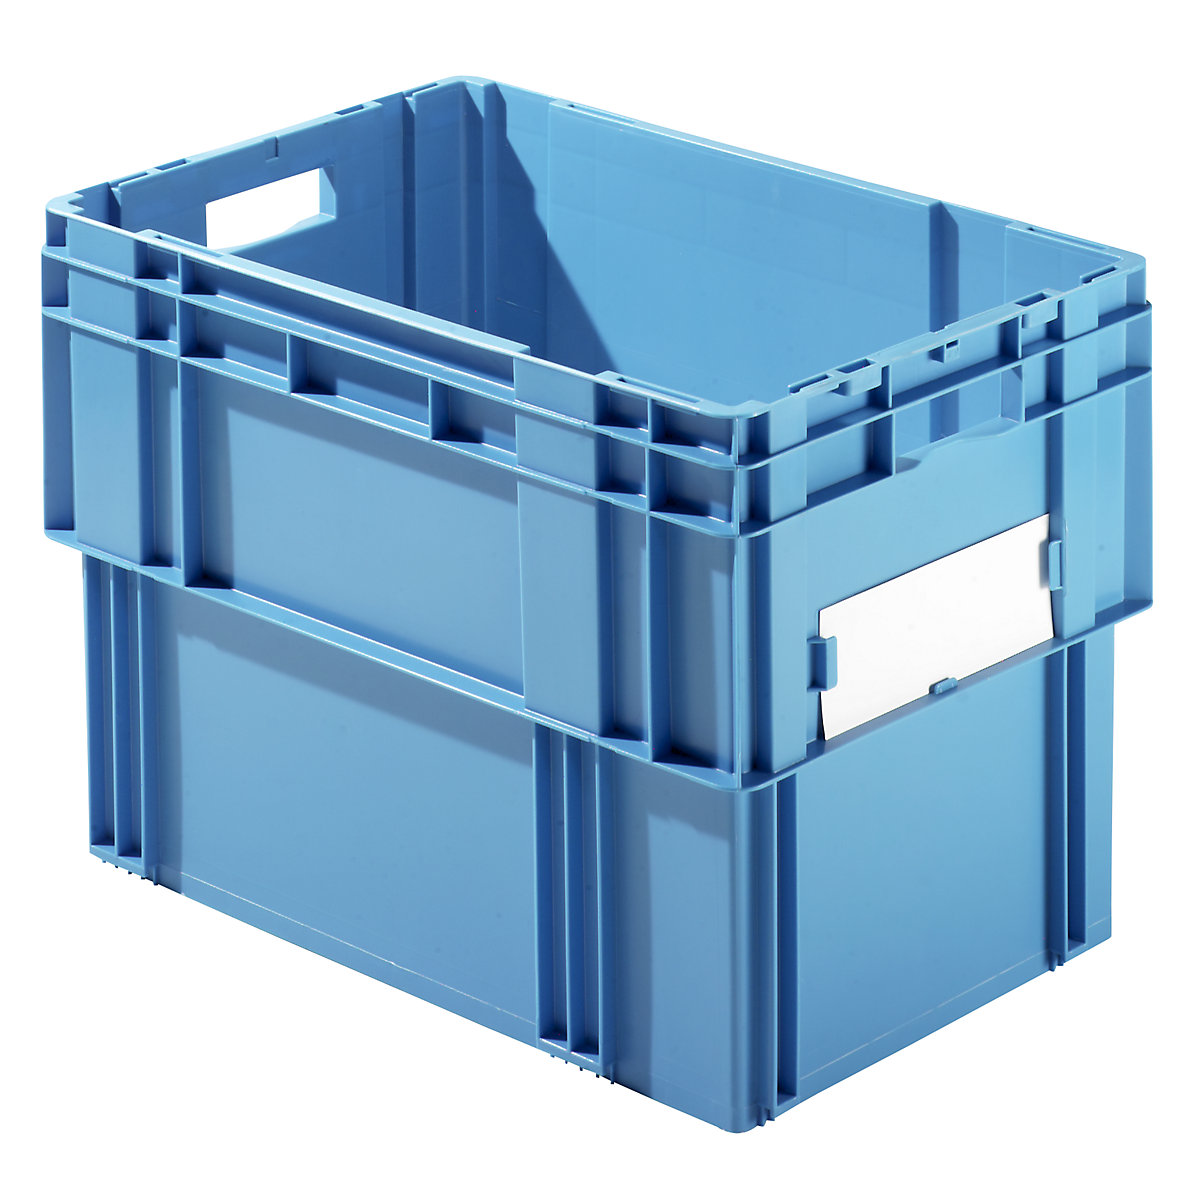 Kutija za slaganje, volumen 78 l, zatvorene stijenke i dno, pak. 4 kom., u plavoj boji